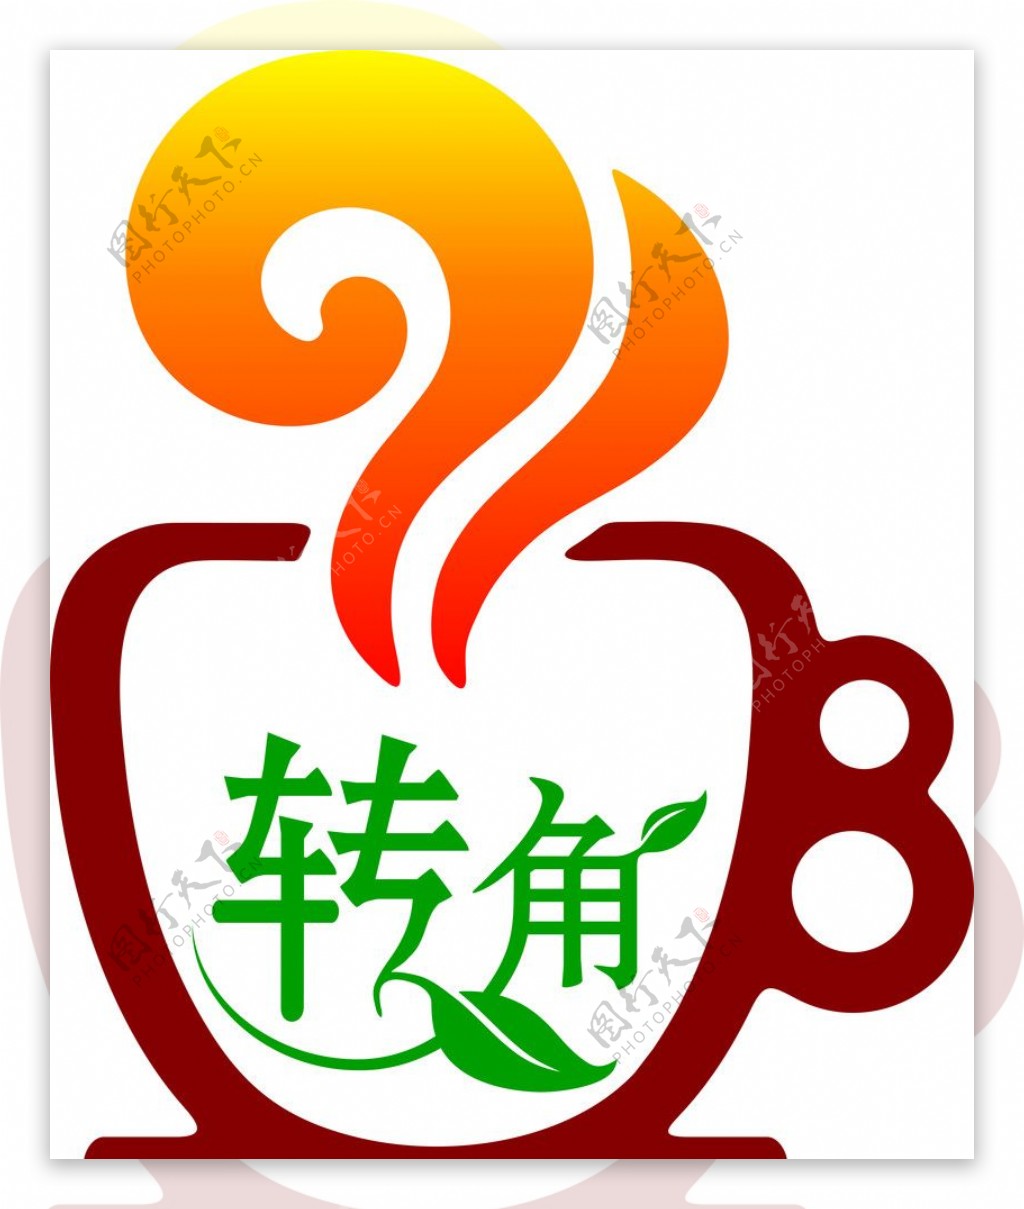 转角咖啡屋Logo图片